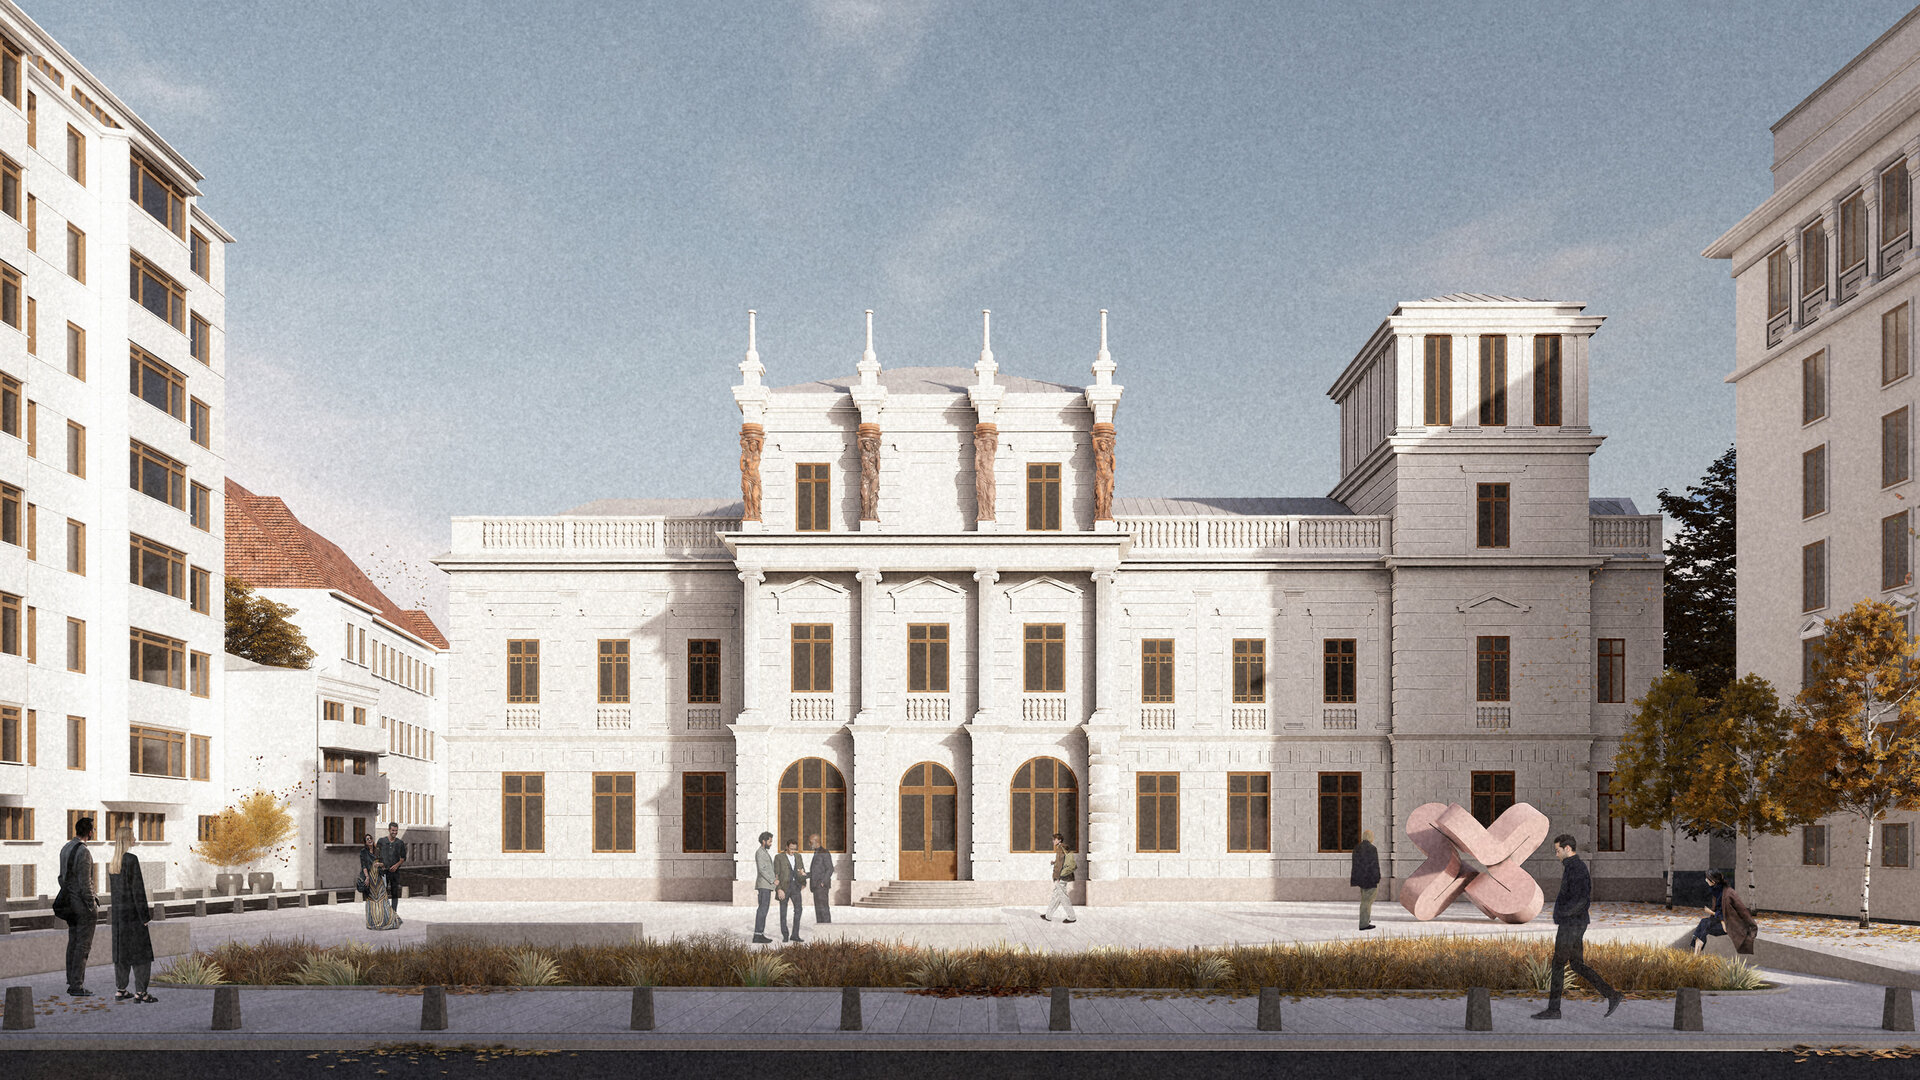 Reabilitarea și extinderea ansamblului palatului Știrbei din București. Relocarea Muzeului Național de Artă Contemporană